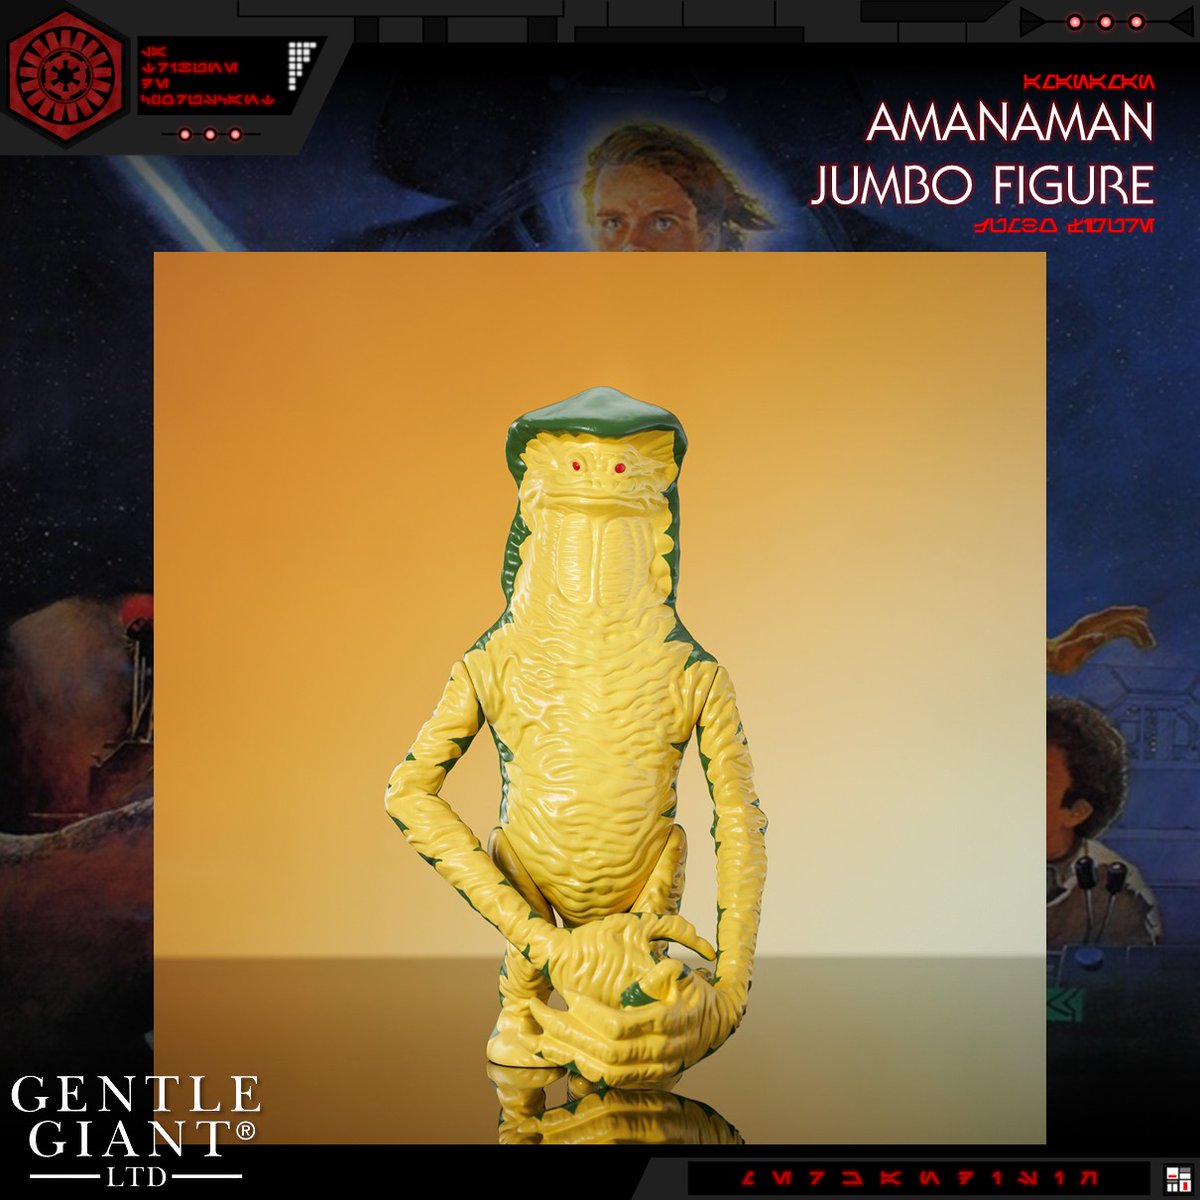 𝐆𝐄𝐍𝐓𝐋𝐄 𝐆𝐈𝐀𝐍𝐓

Gentle Giant présente sa nouvelle figurine Jumbo d'Amanaman du Retour du Jedi pour le Star Wars Day.

Cette figurine est disponible en précommande à 99$.

#LaTribunedeCoruscant #GentleGiant #Amanaman #LeRetourduJedi